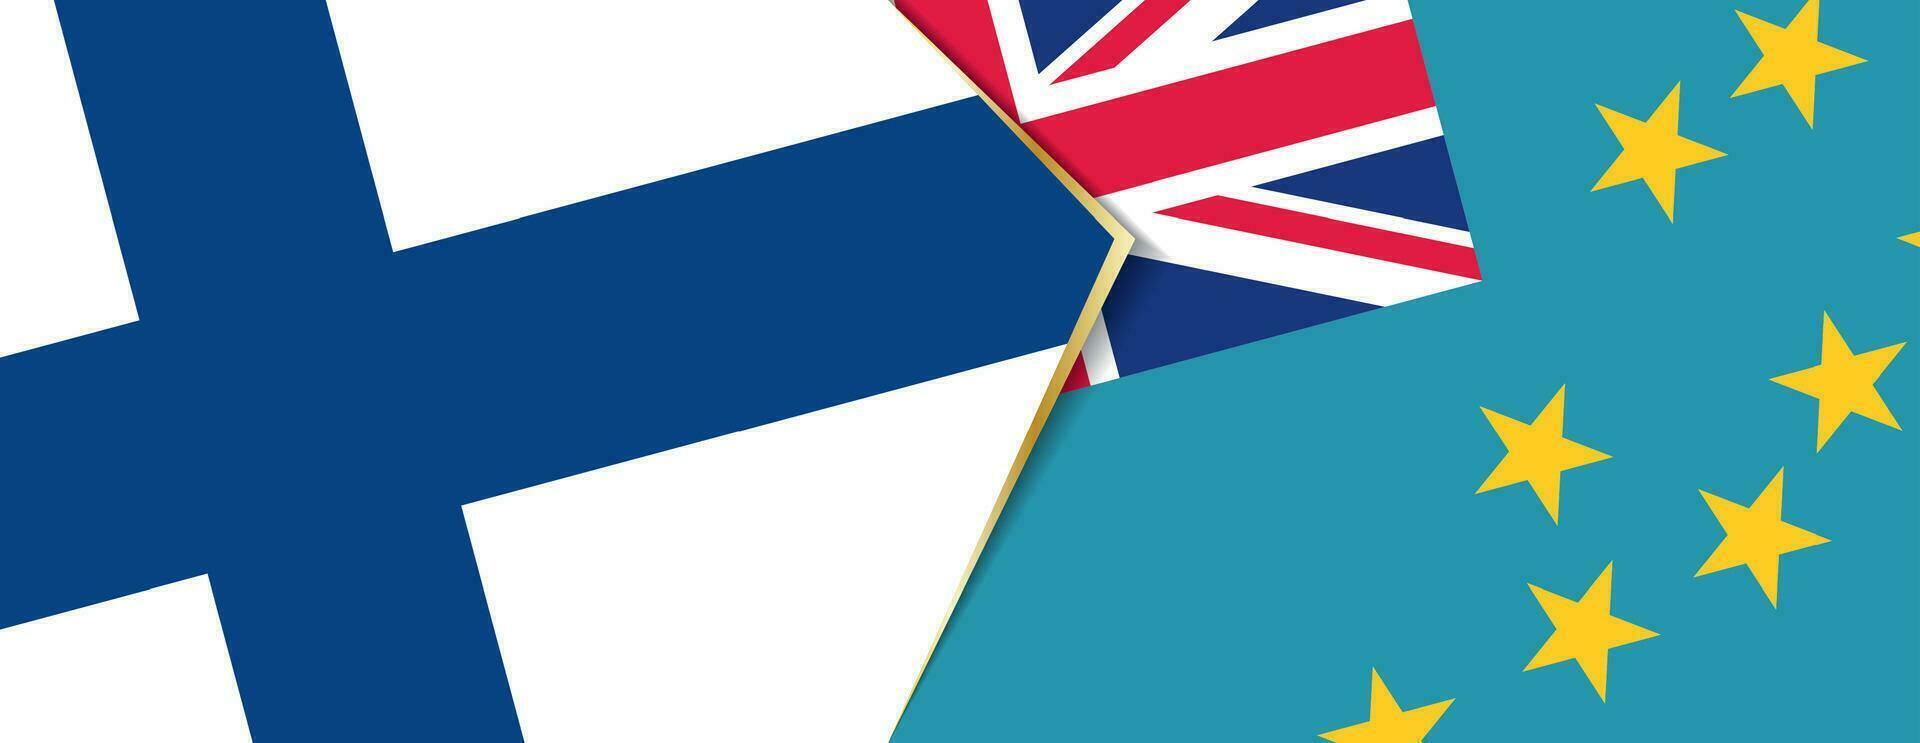 Finlandia y tuvalu banderas, dos vector banderas